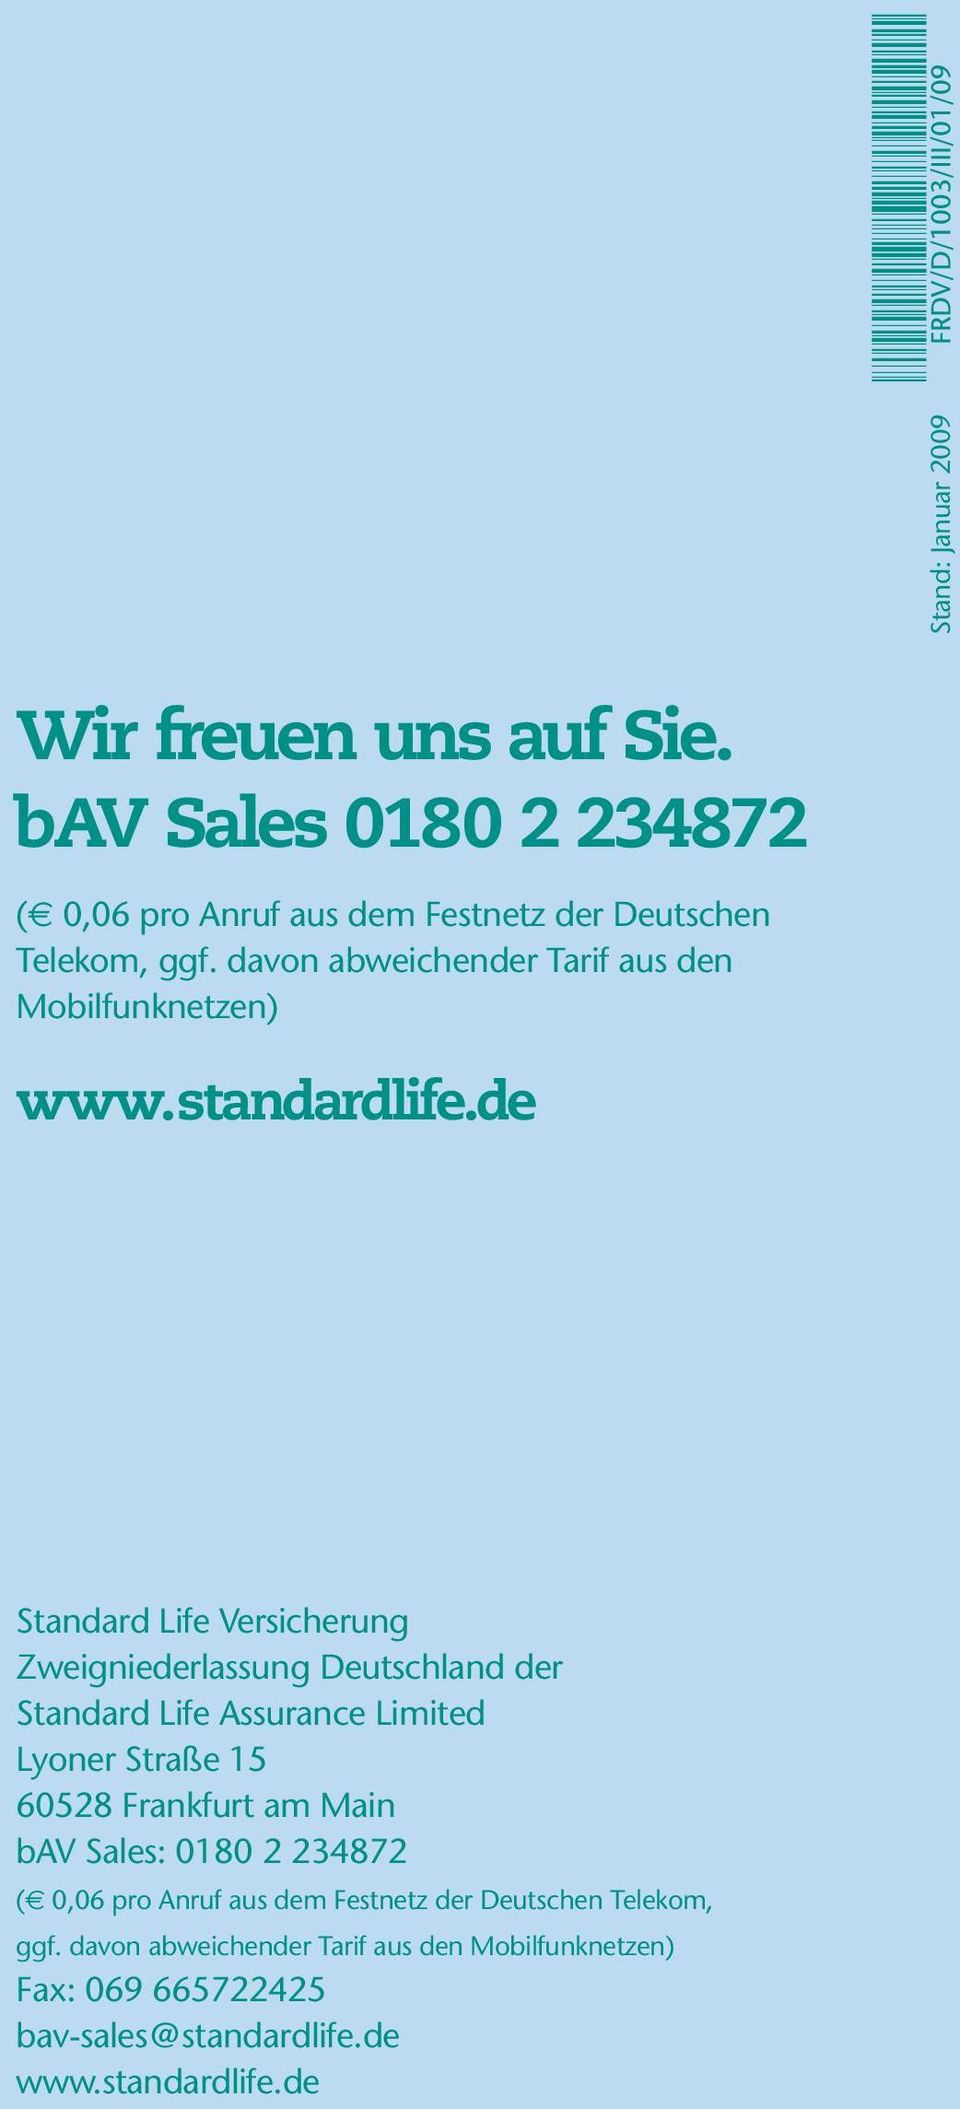 de Standard Life Versicherung Zweigniederlassung Deutschland der Standard Life Assurance Limited Lyoner Straße 15 60528 Frankfurt am